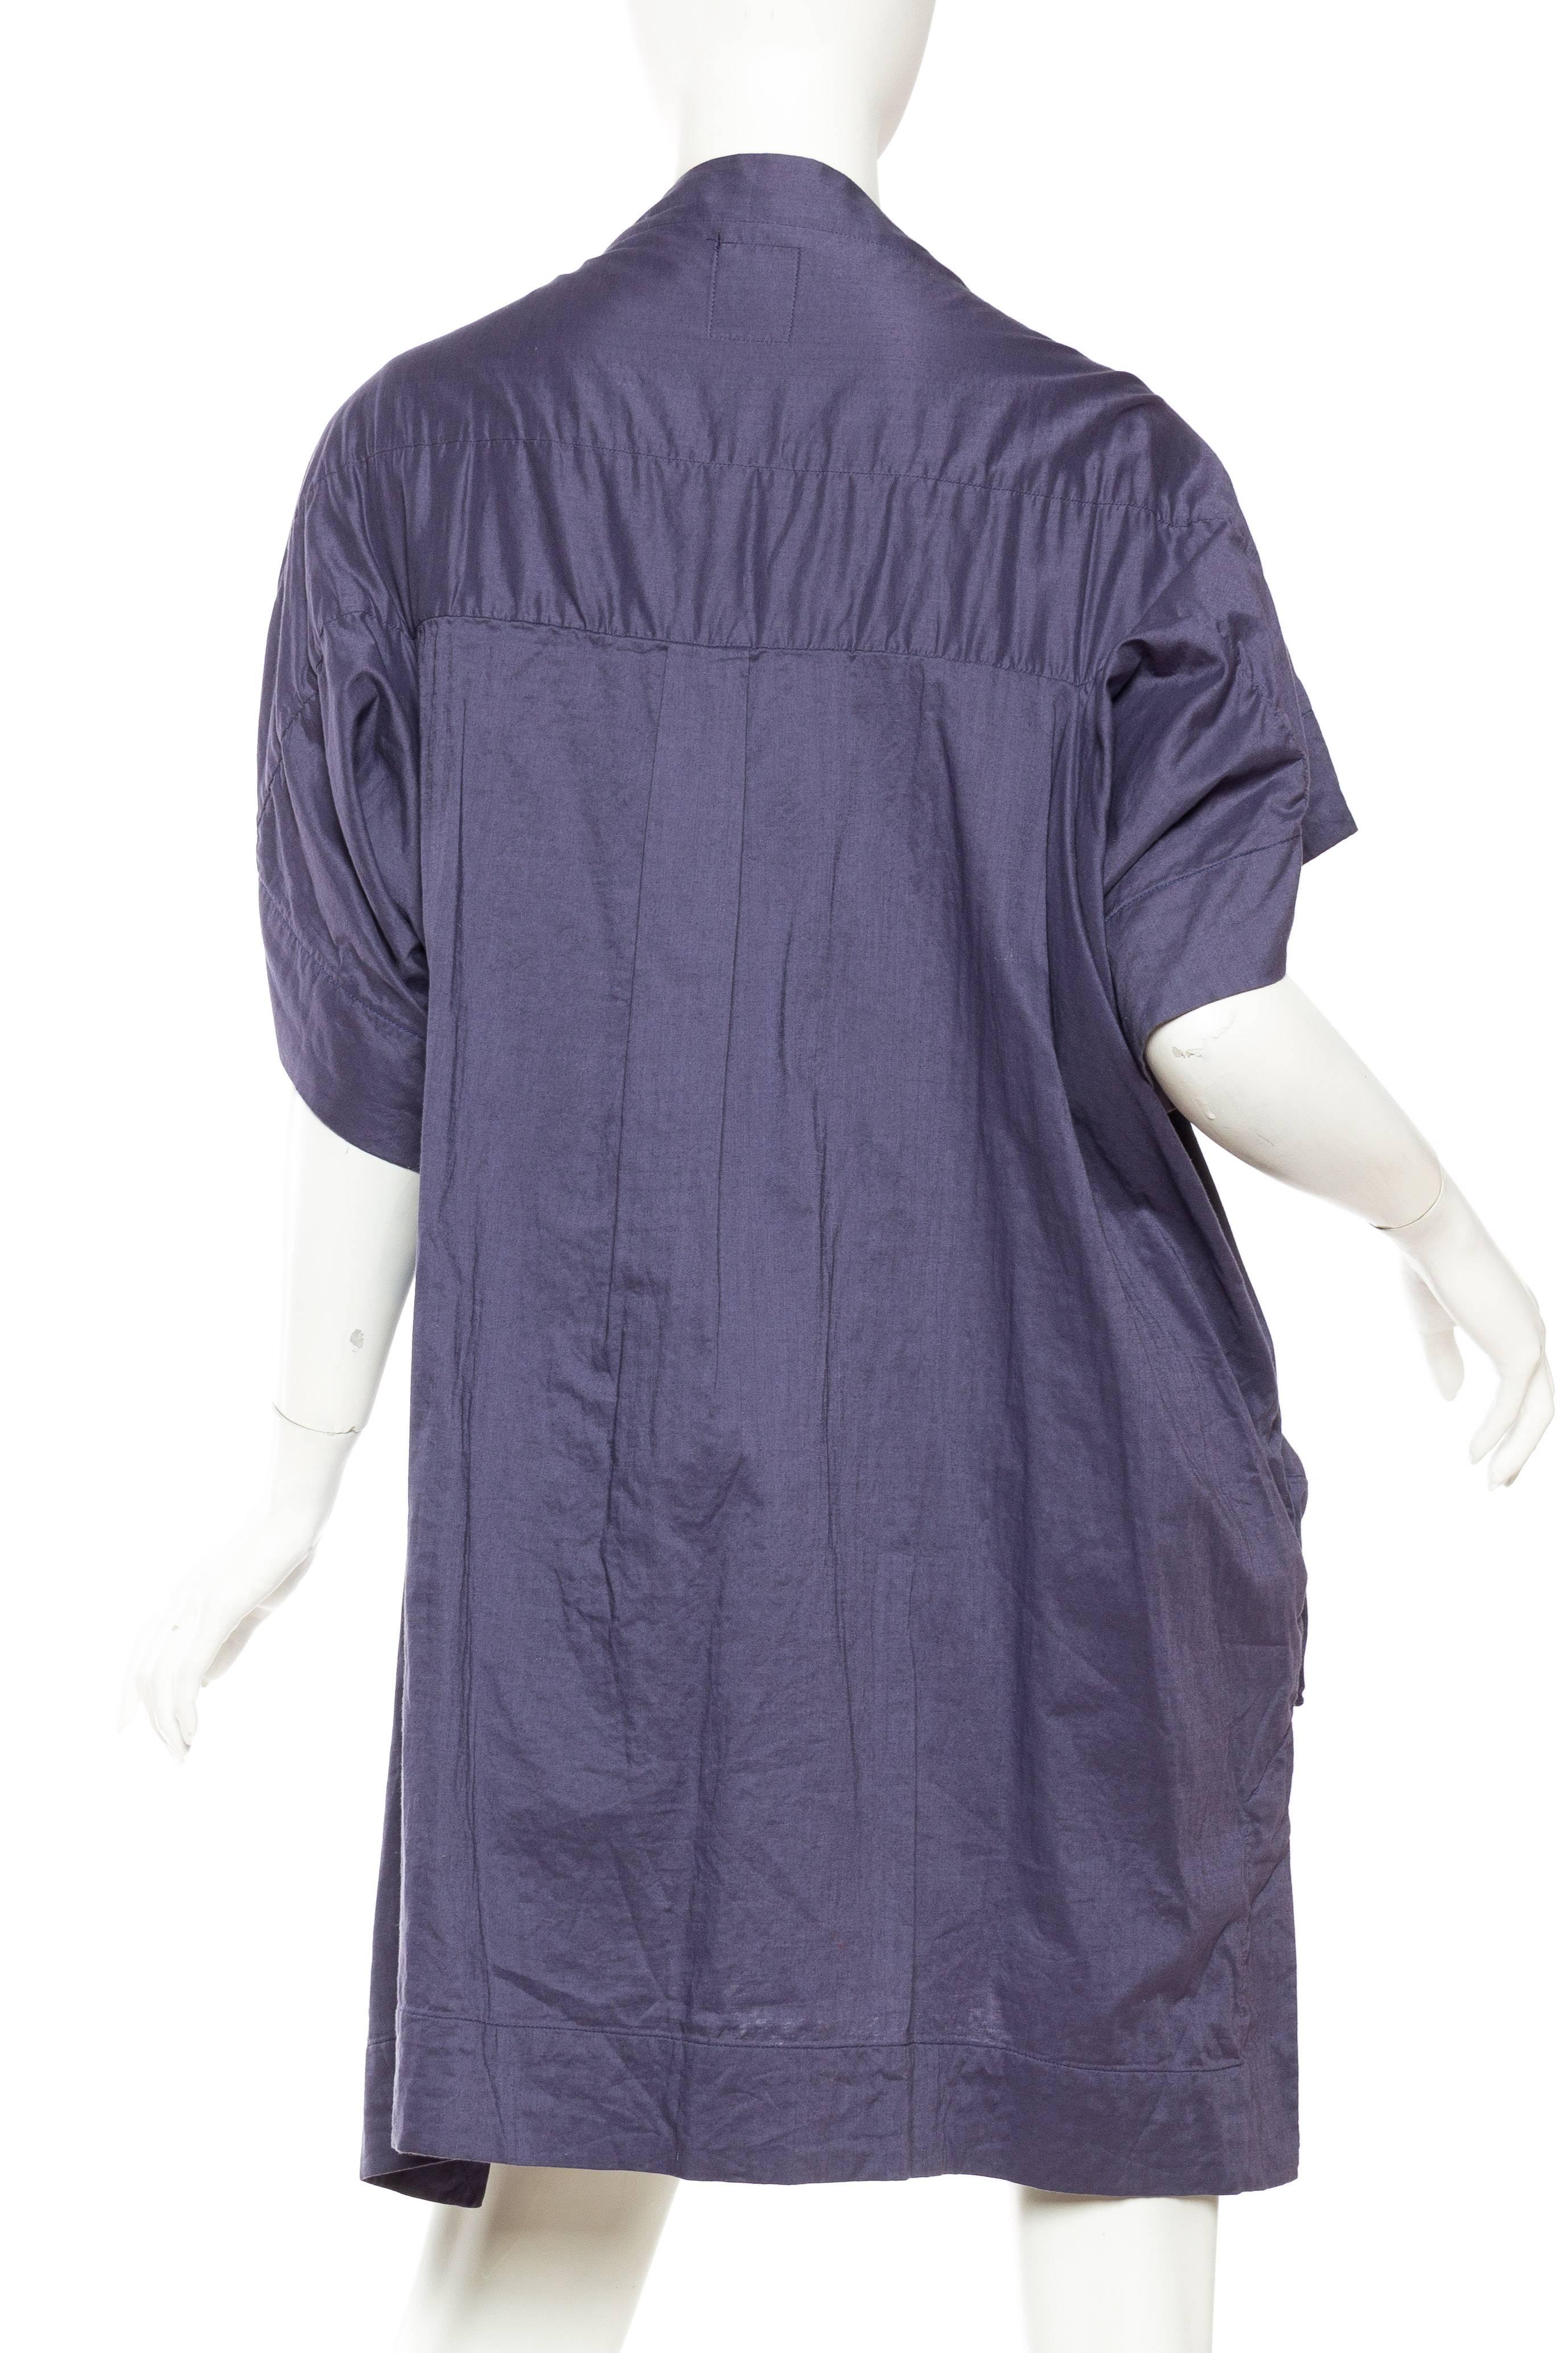 Bernhard Willhelm Cotton Dress 2